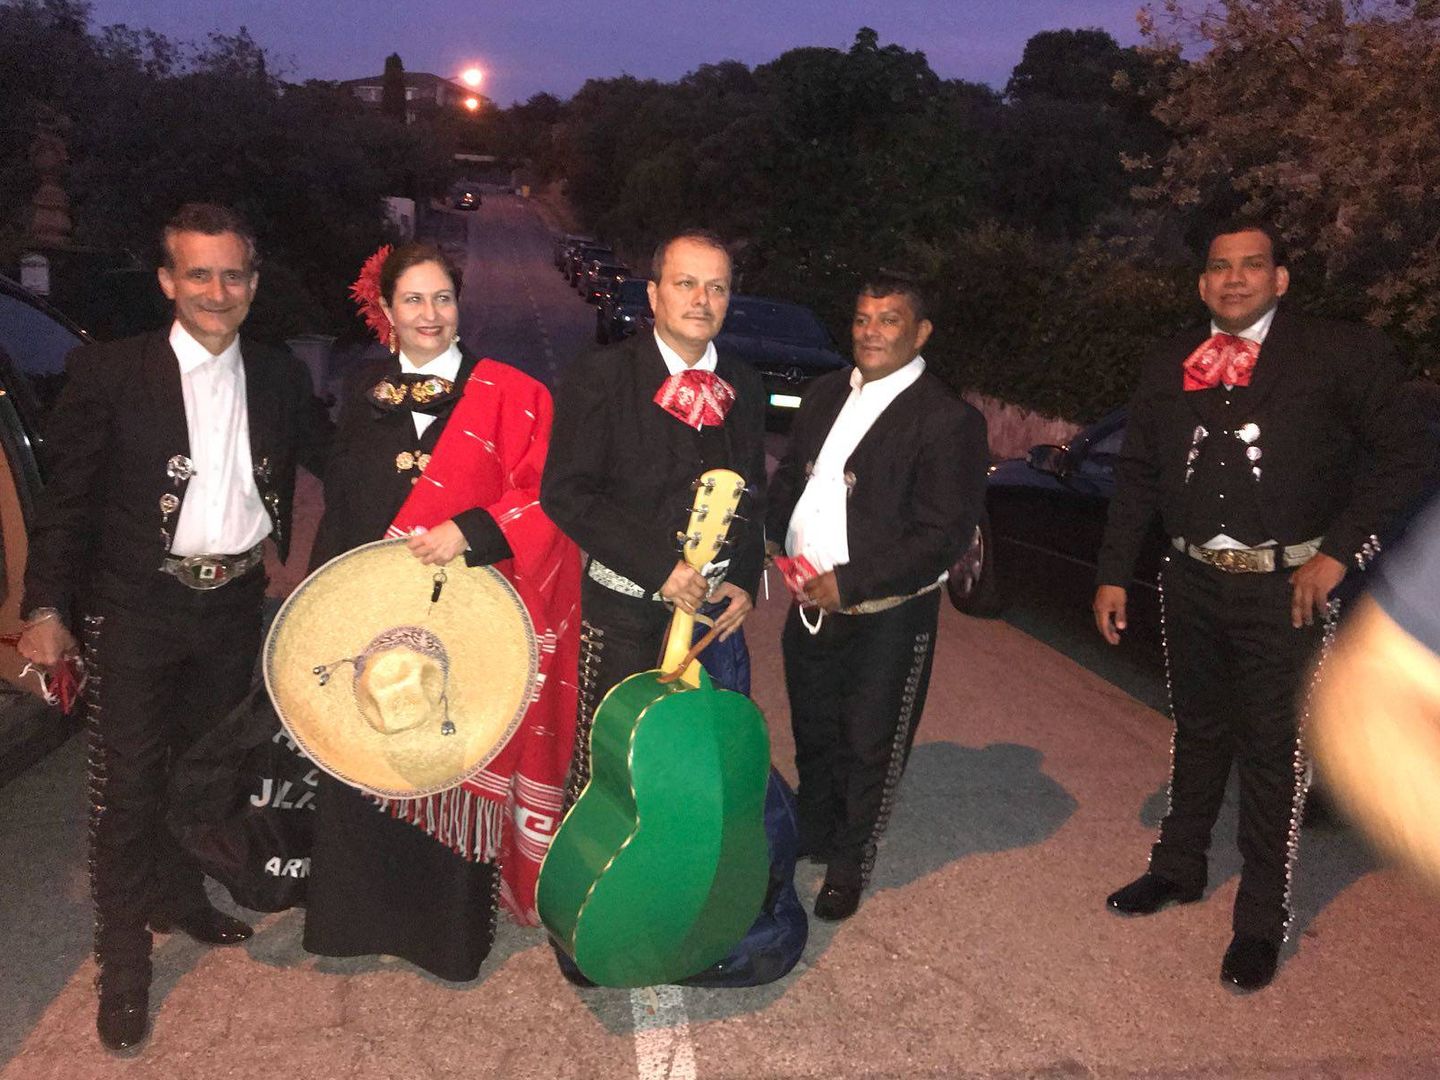 El grupo de mariachis que amenizó la boda de Juan Luis Cebrián. (Vanitatis)